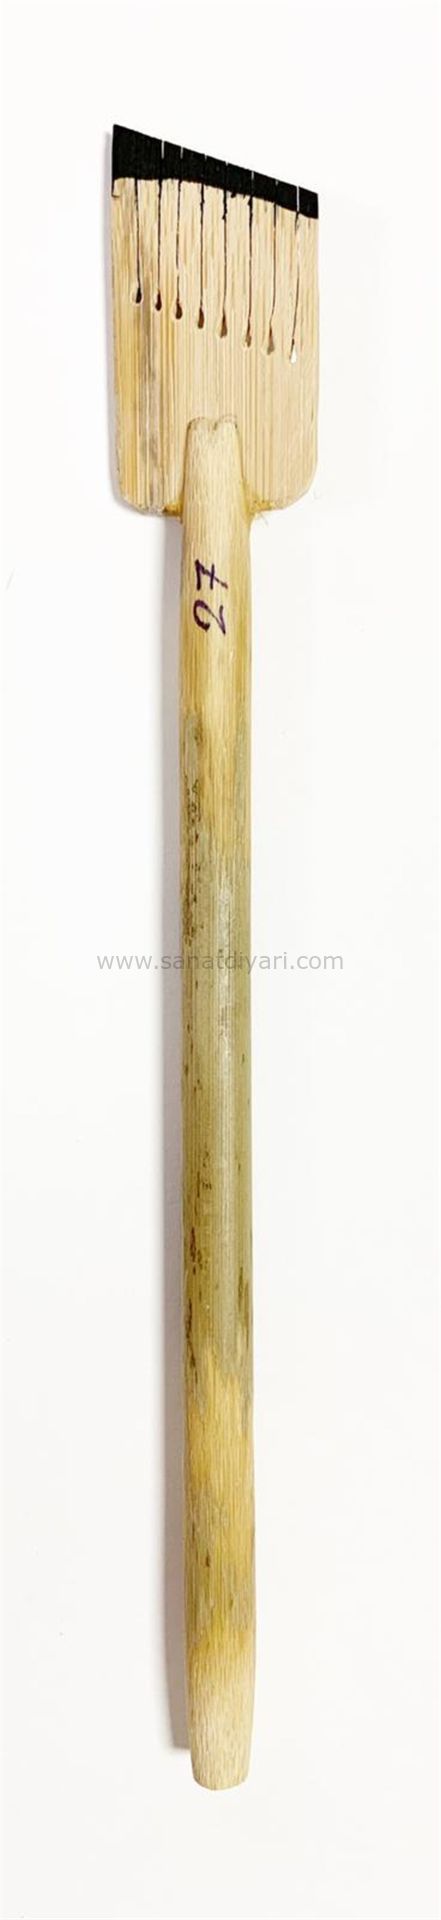 Tiryakiart Şaklı Bambu Kalem 27 mm